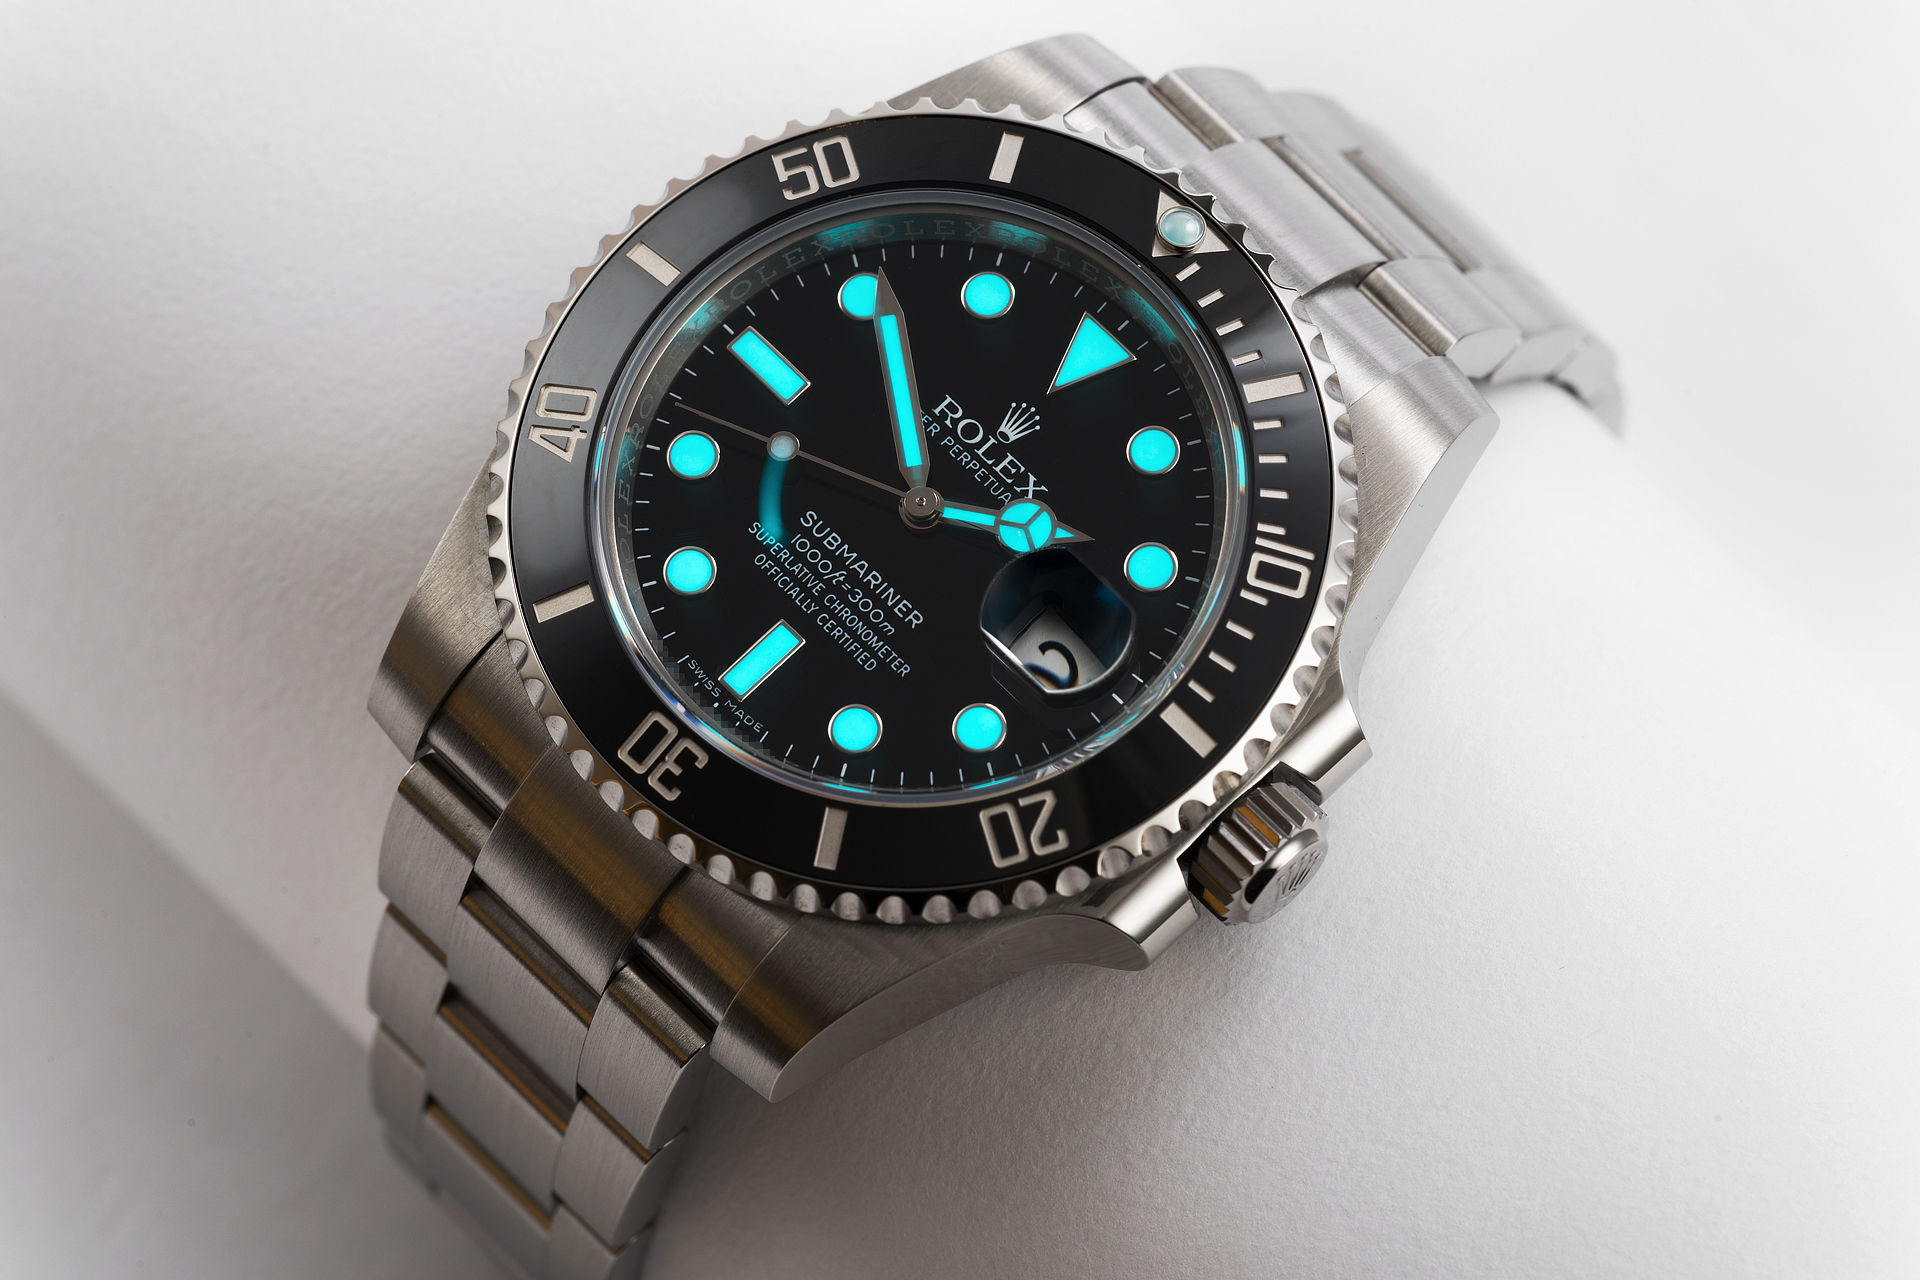 ref 116610LN | 'Brand New' 5 Year Rolex Warranty | Rolex Submariner Date